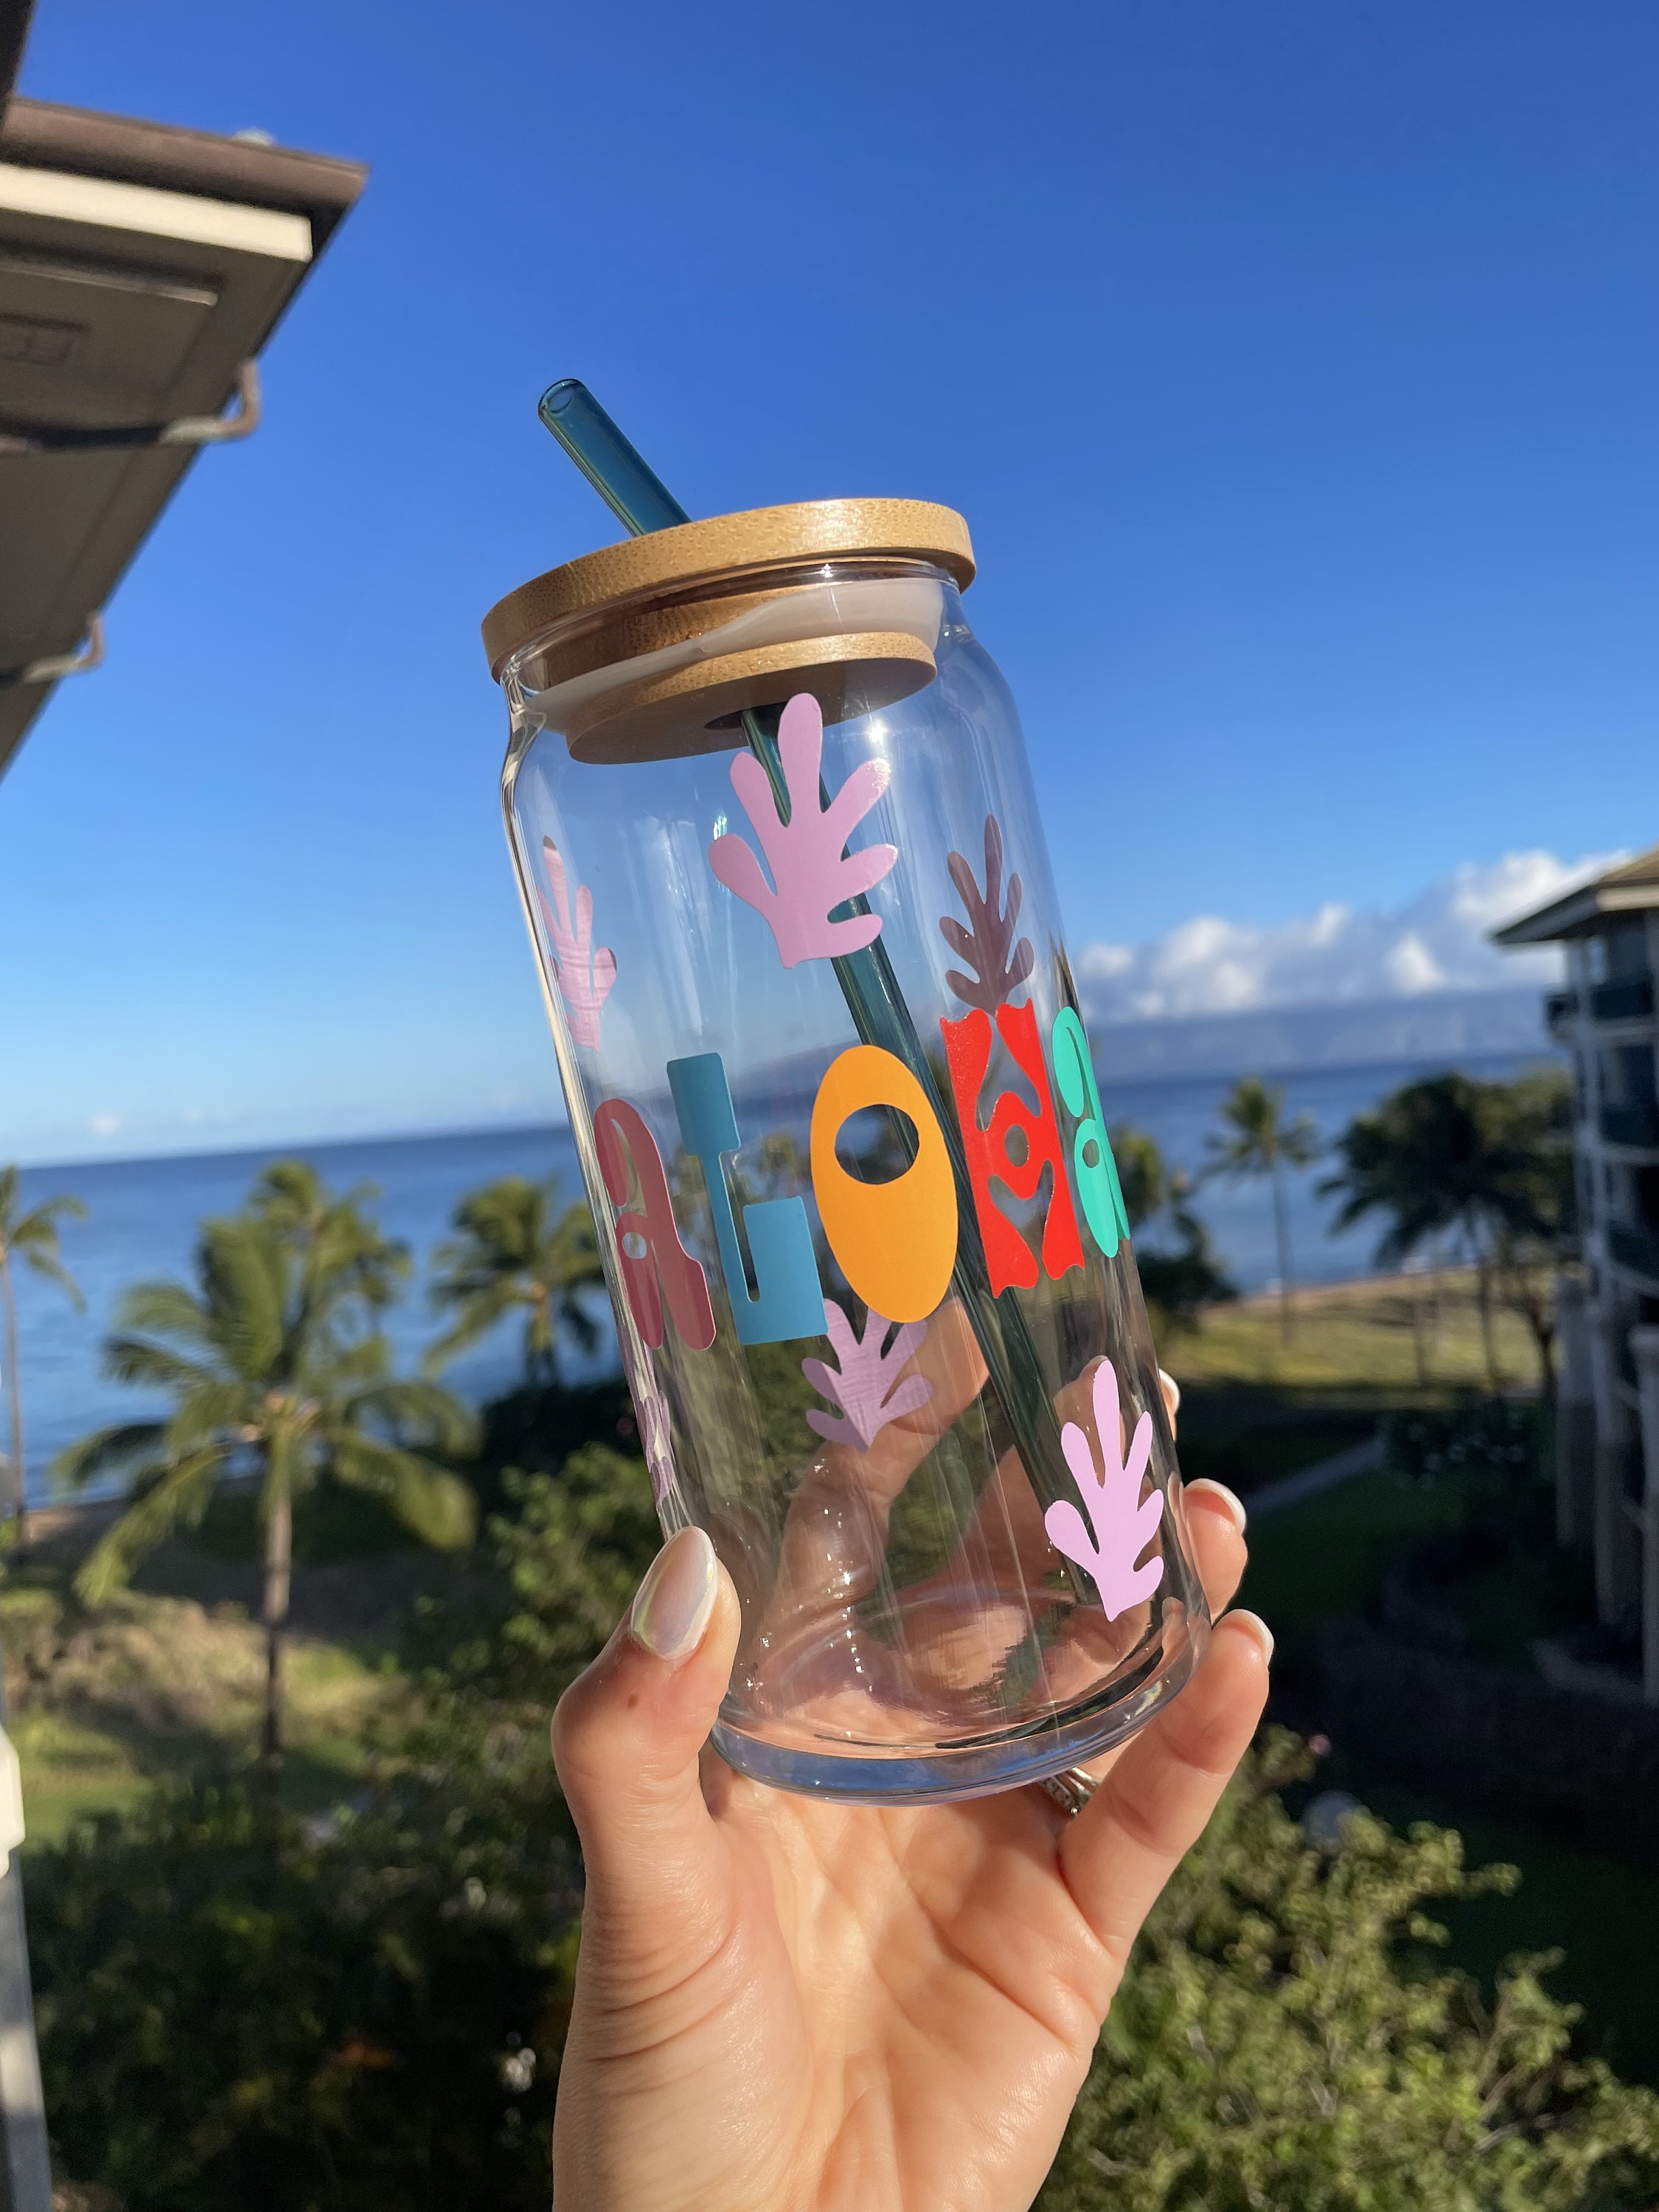 Shop Logo Yeti 18oz Water Bottle – Aloha Exchange